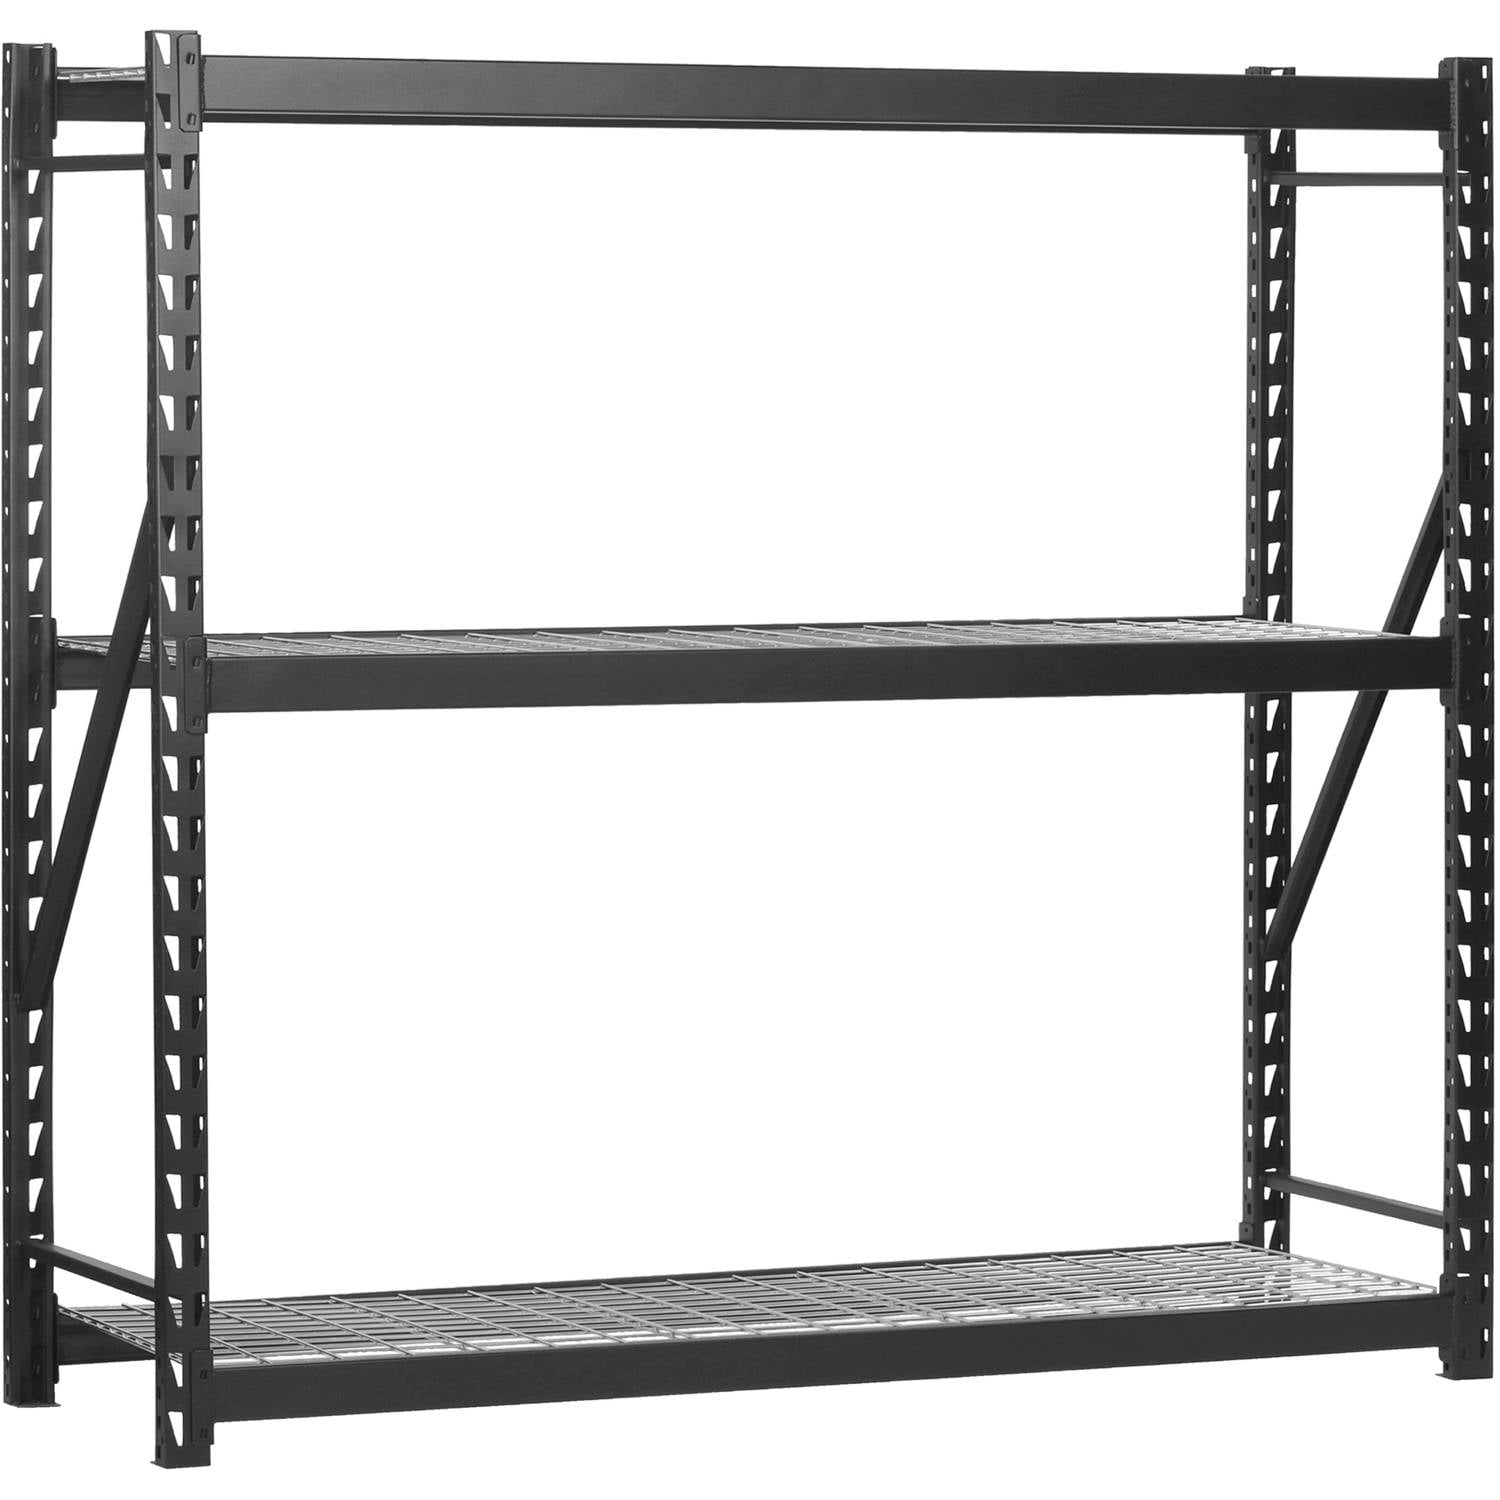 Muscle Rack 48"W x 24"D x 72"H 5-Shelf Steel Shelving Black 